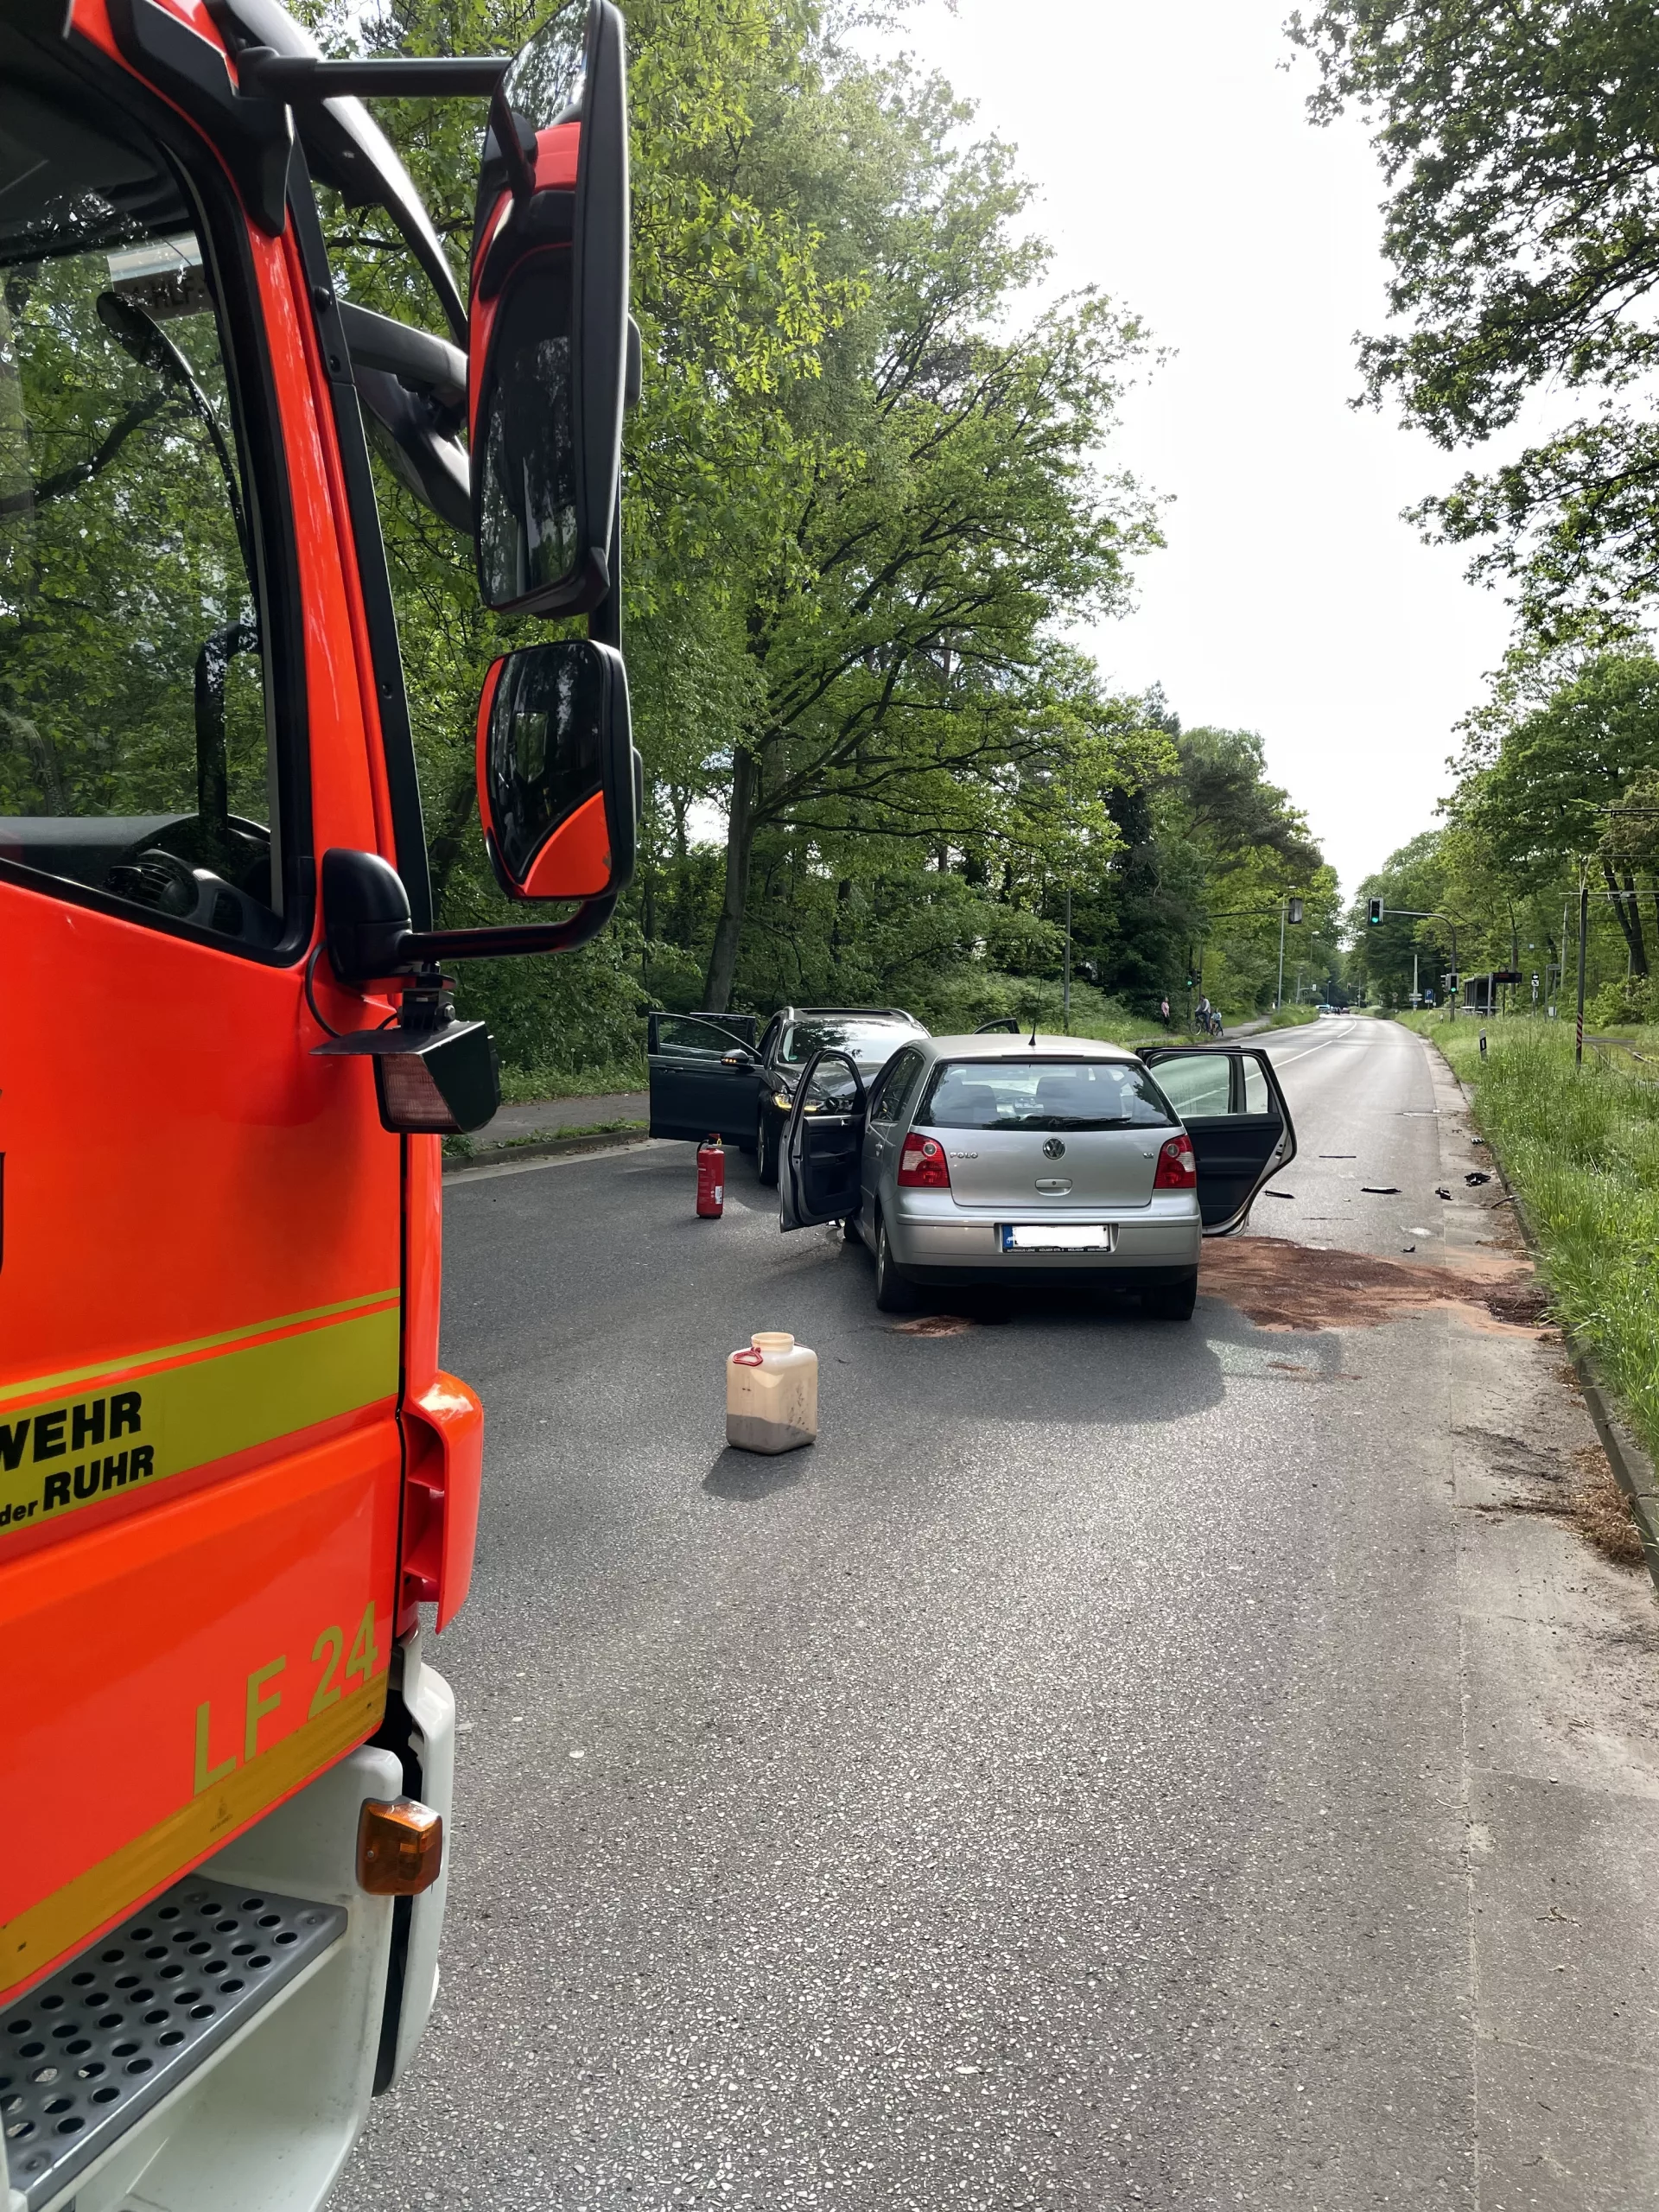 Mülheim an der Ruhr: Frontal-Unfall zwischen zwei Fahrzeugen